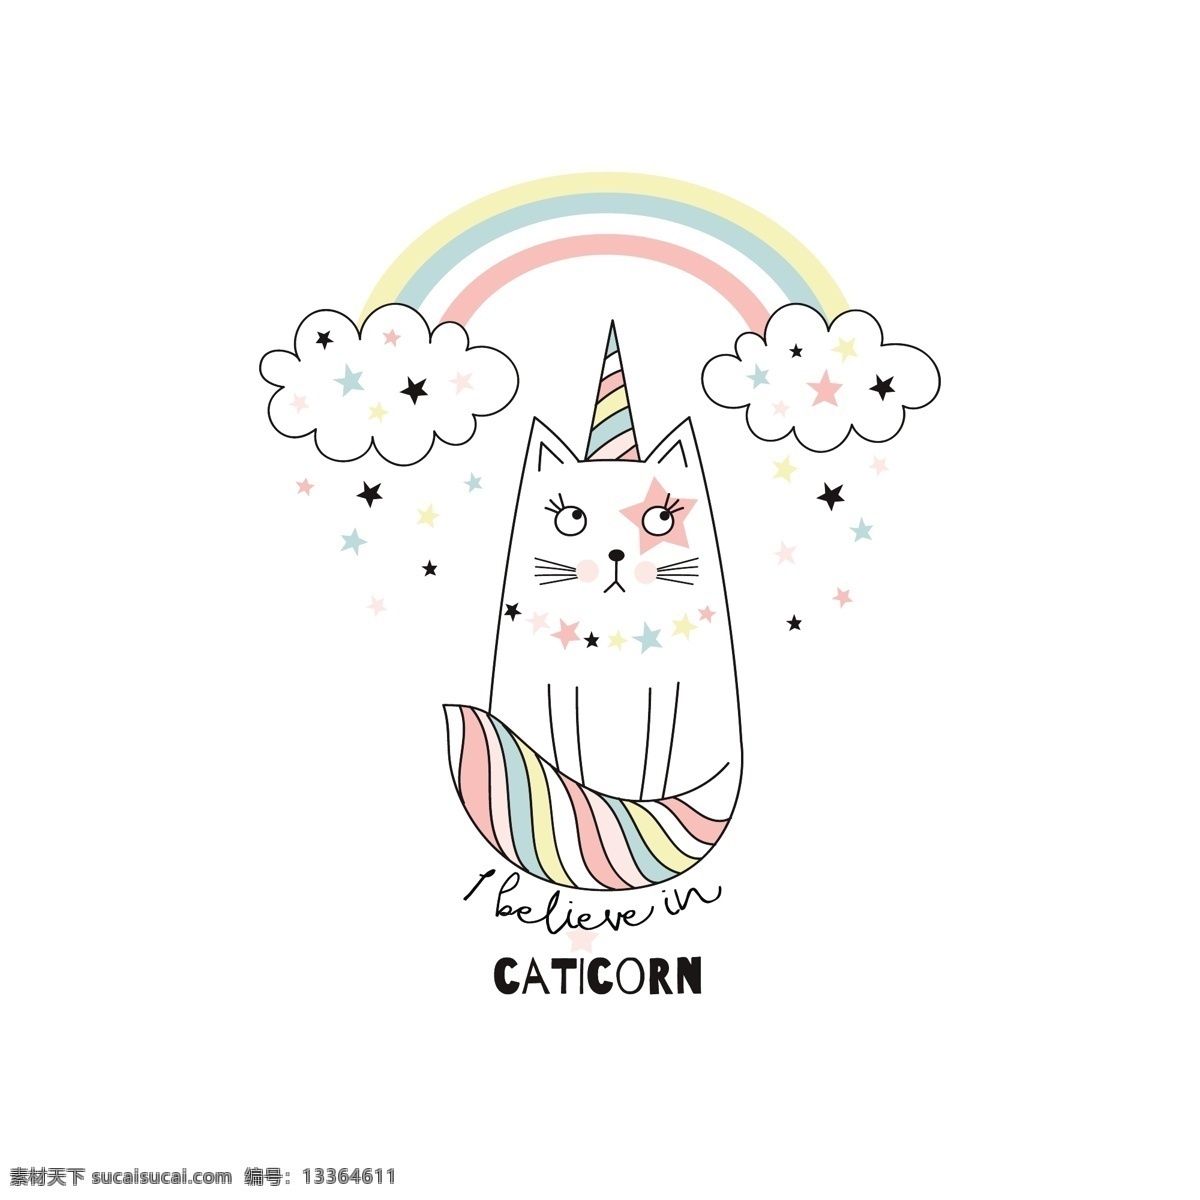 可爱 卡通 版 白猫 矢量 白云 彩虹 彩色 平面素材 设计素材 矢量素材 星星